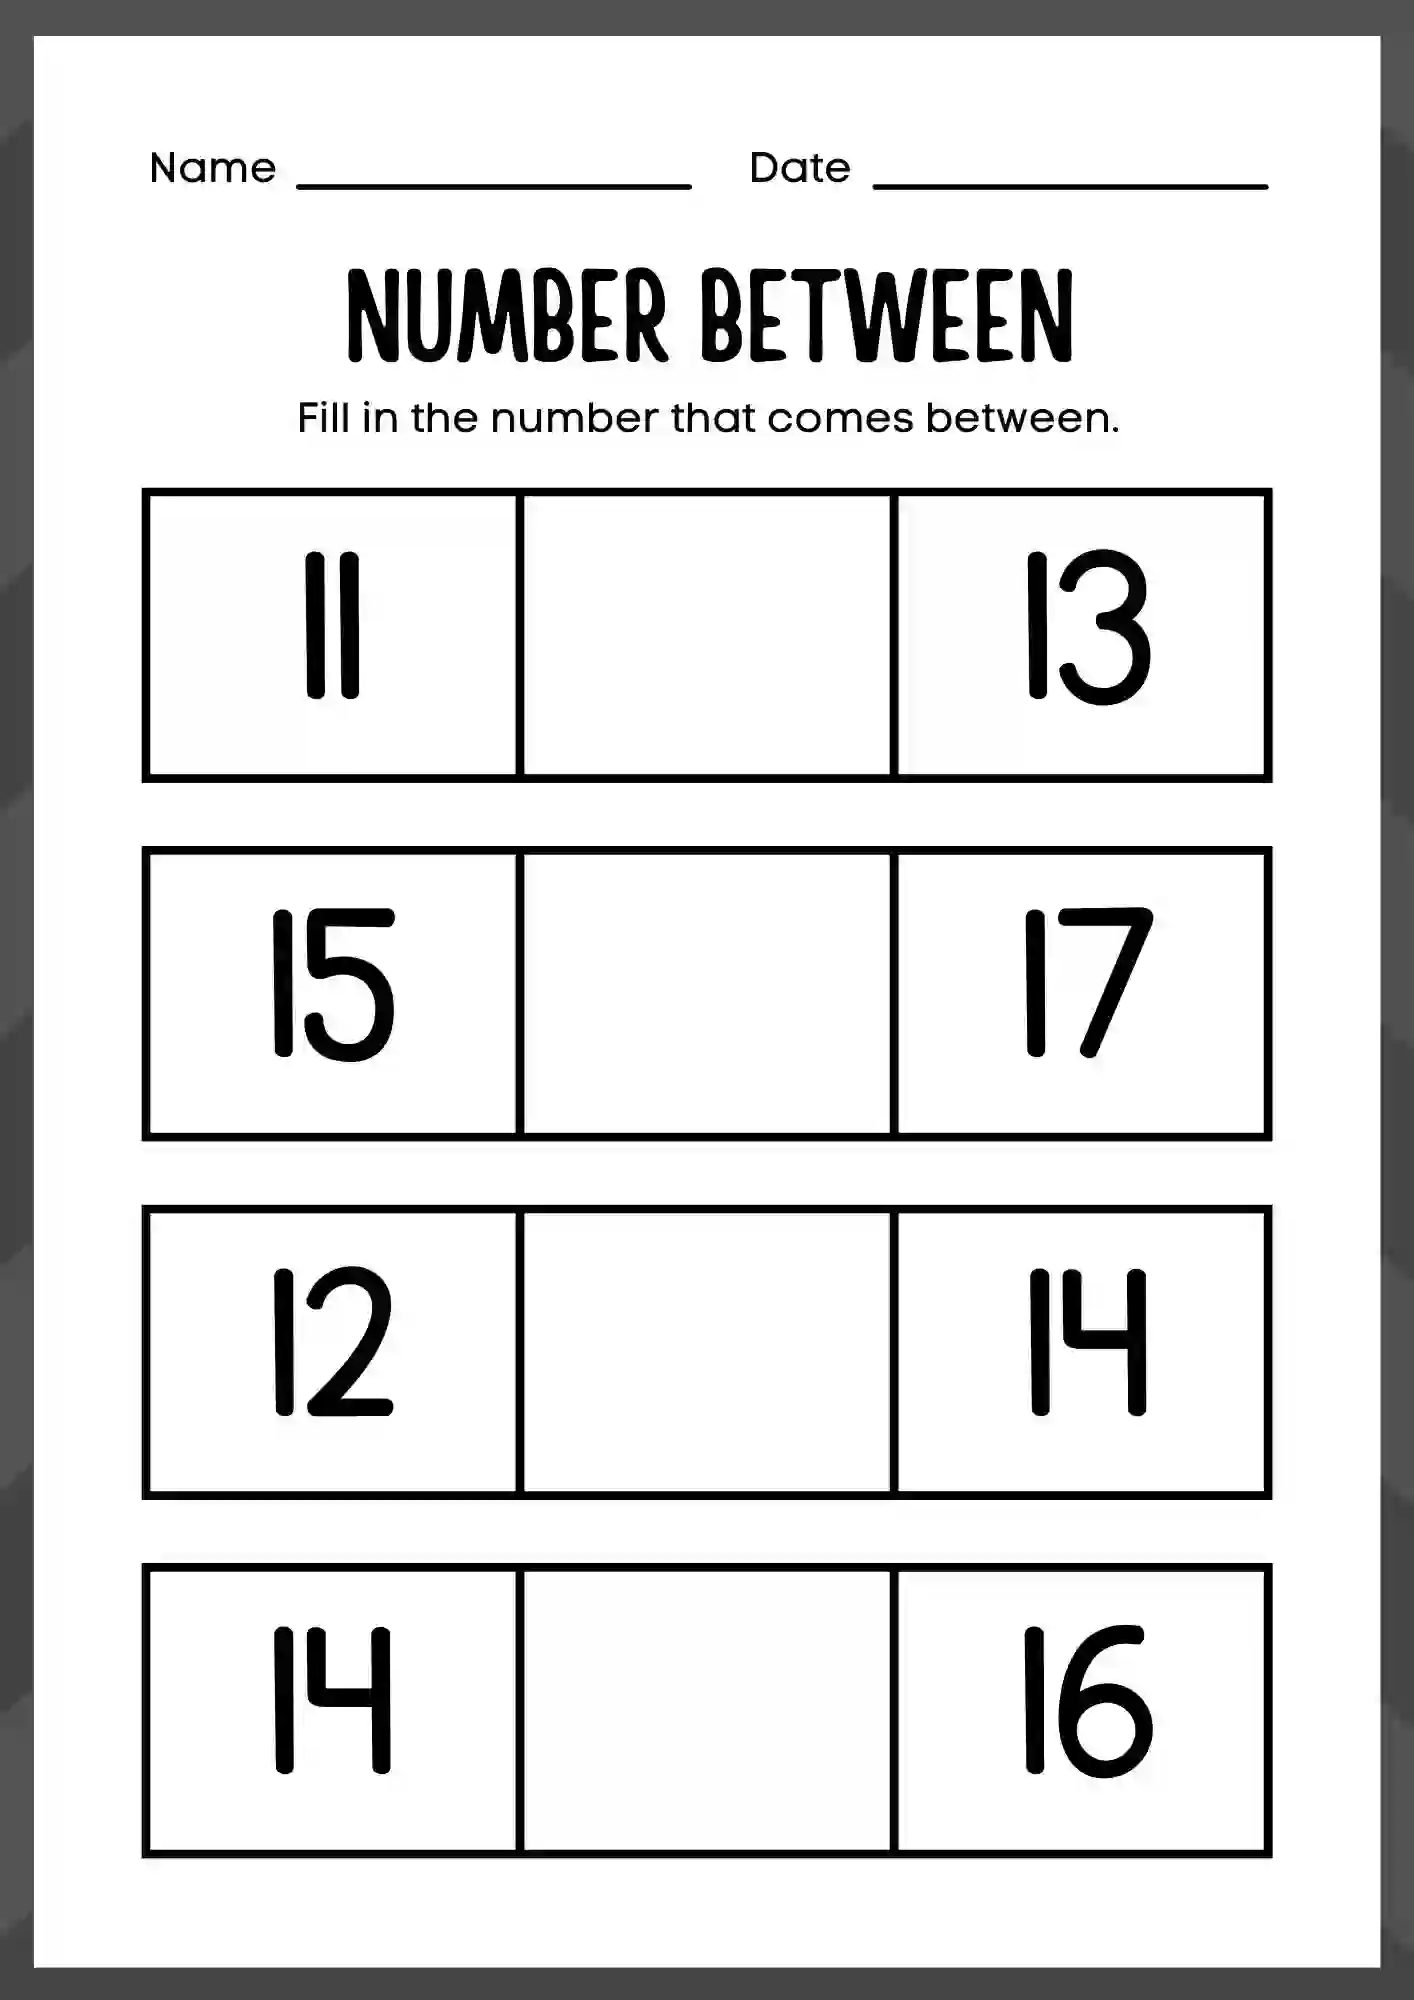 Number Between Worksheet